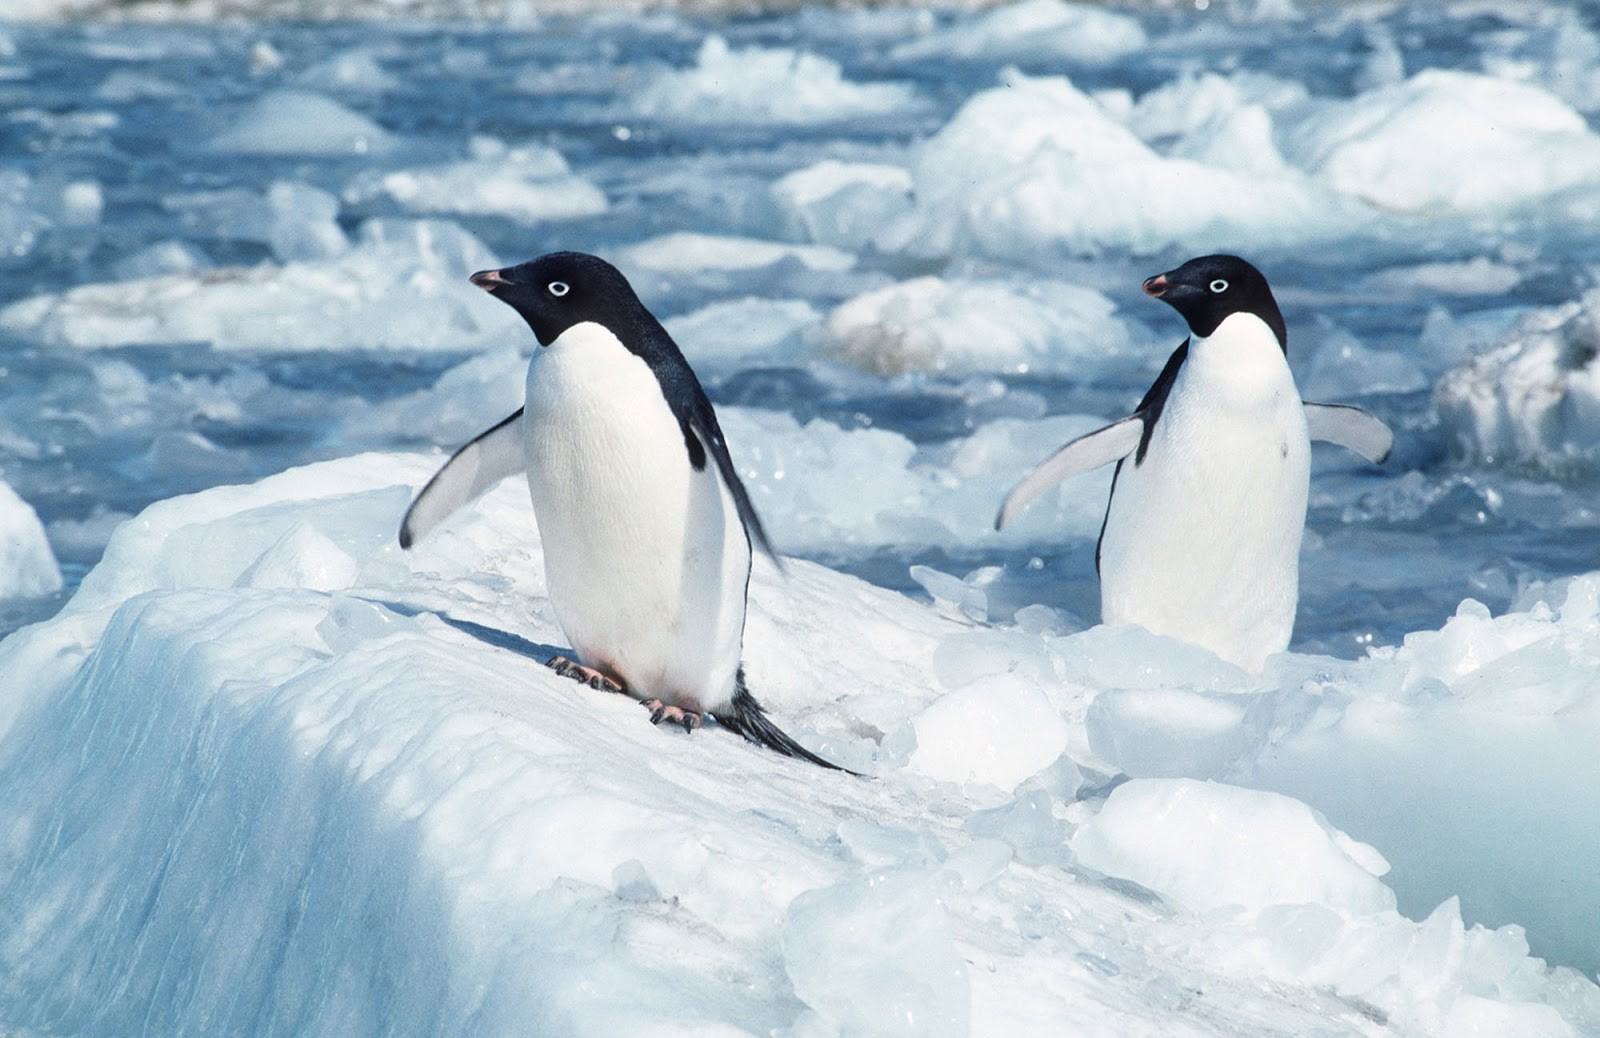 Hai chú chim cánh cụt con đang đứng trên băng